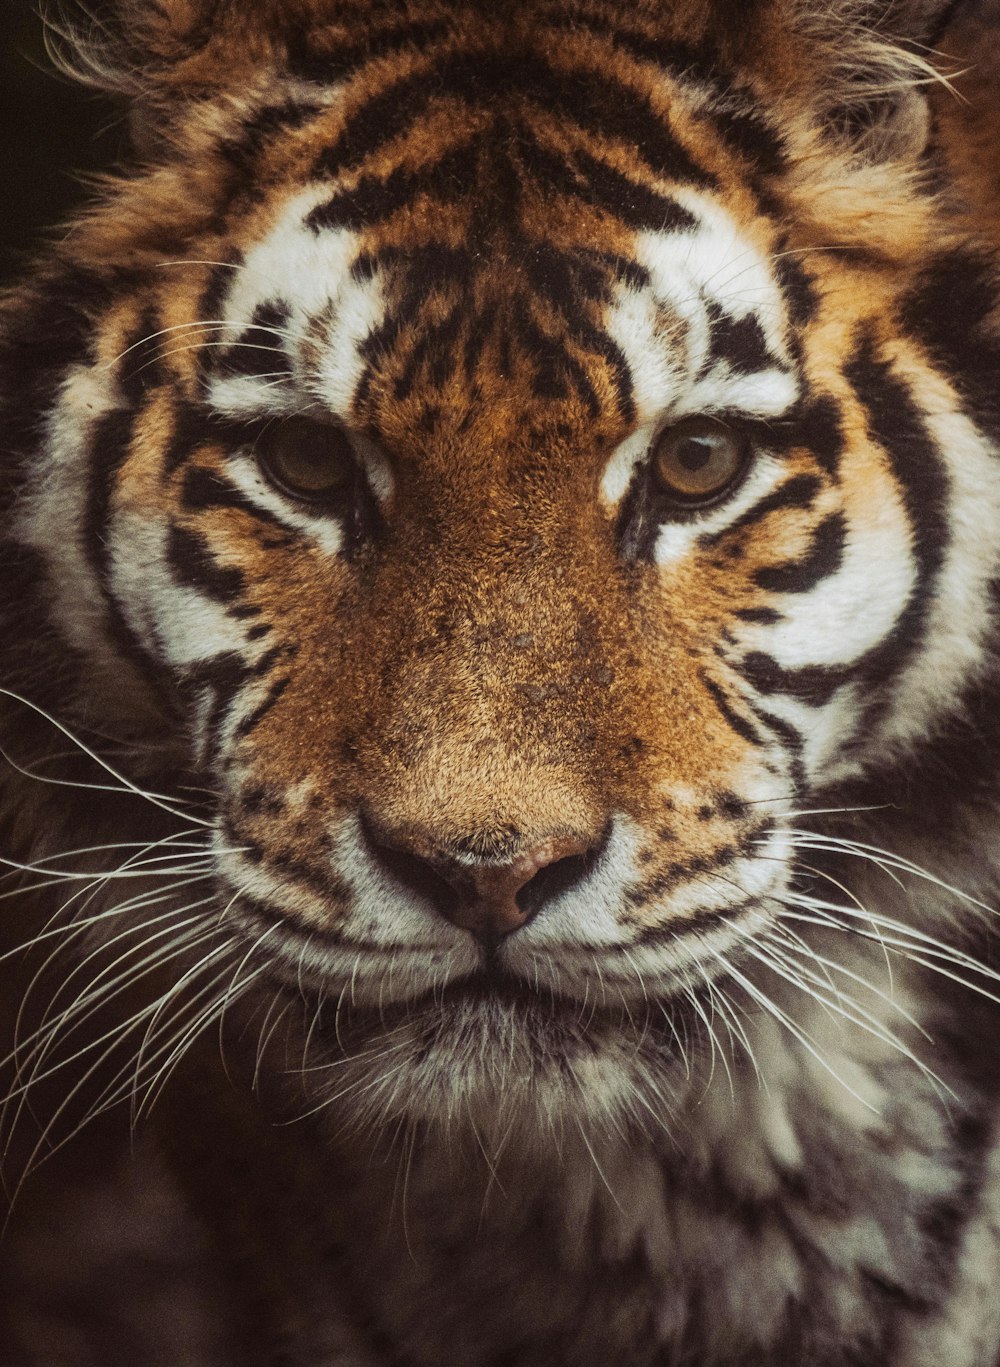 Eine Nahaufnahme des Gesichts eines Tigers mit verschwommenem Hintergrund